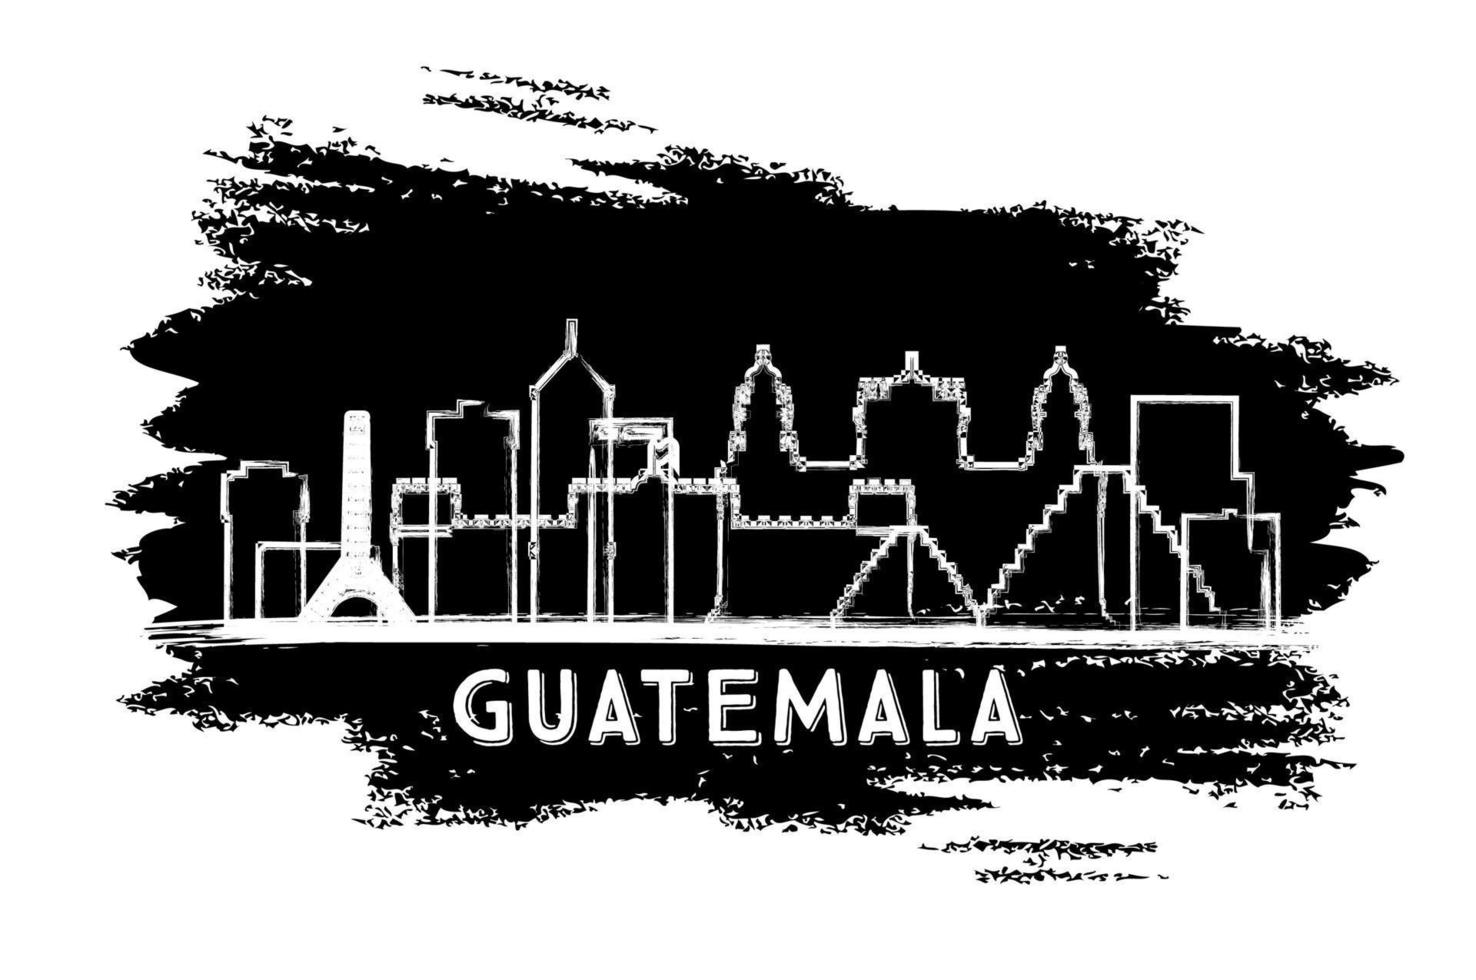 silueta del horizonte de la ciudad de guatemala. boceto dibujado a mano. vector